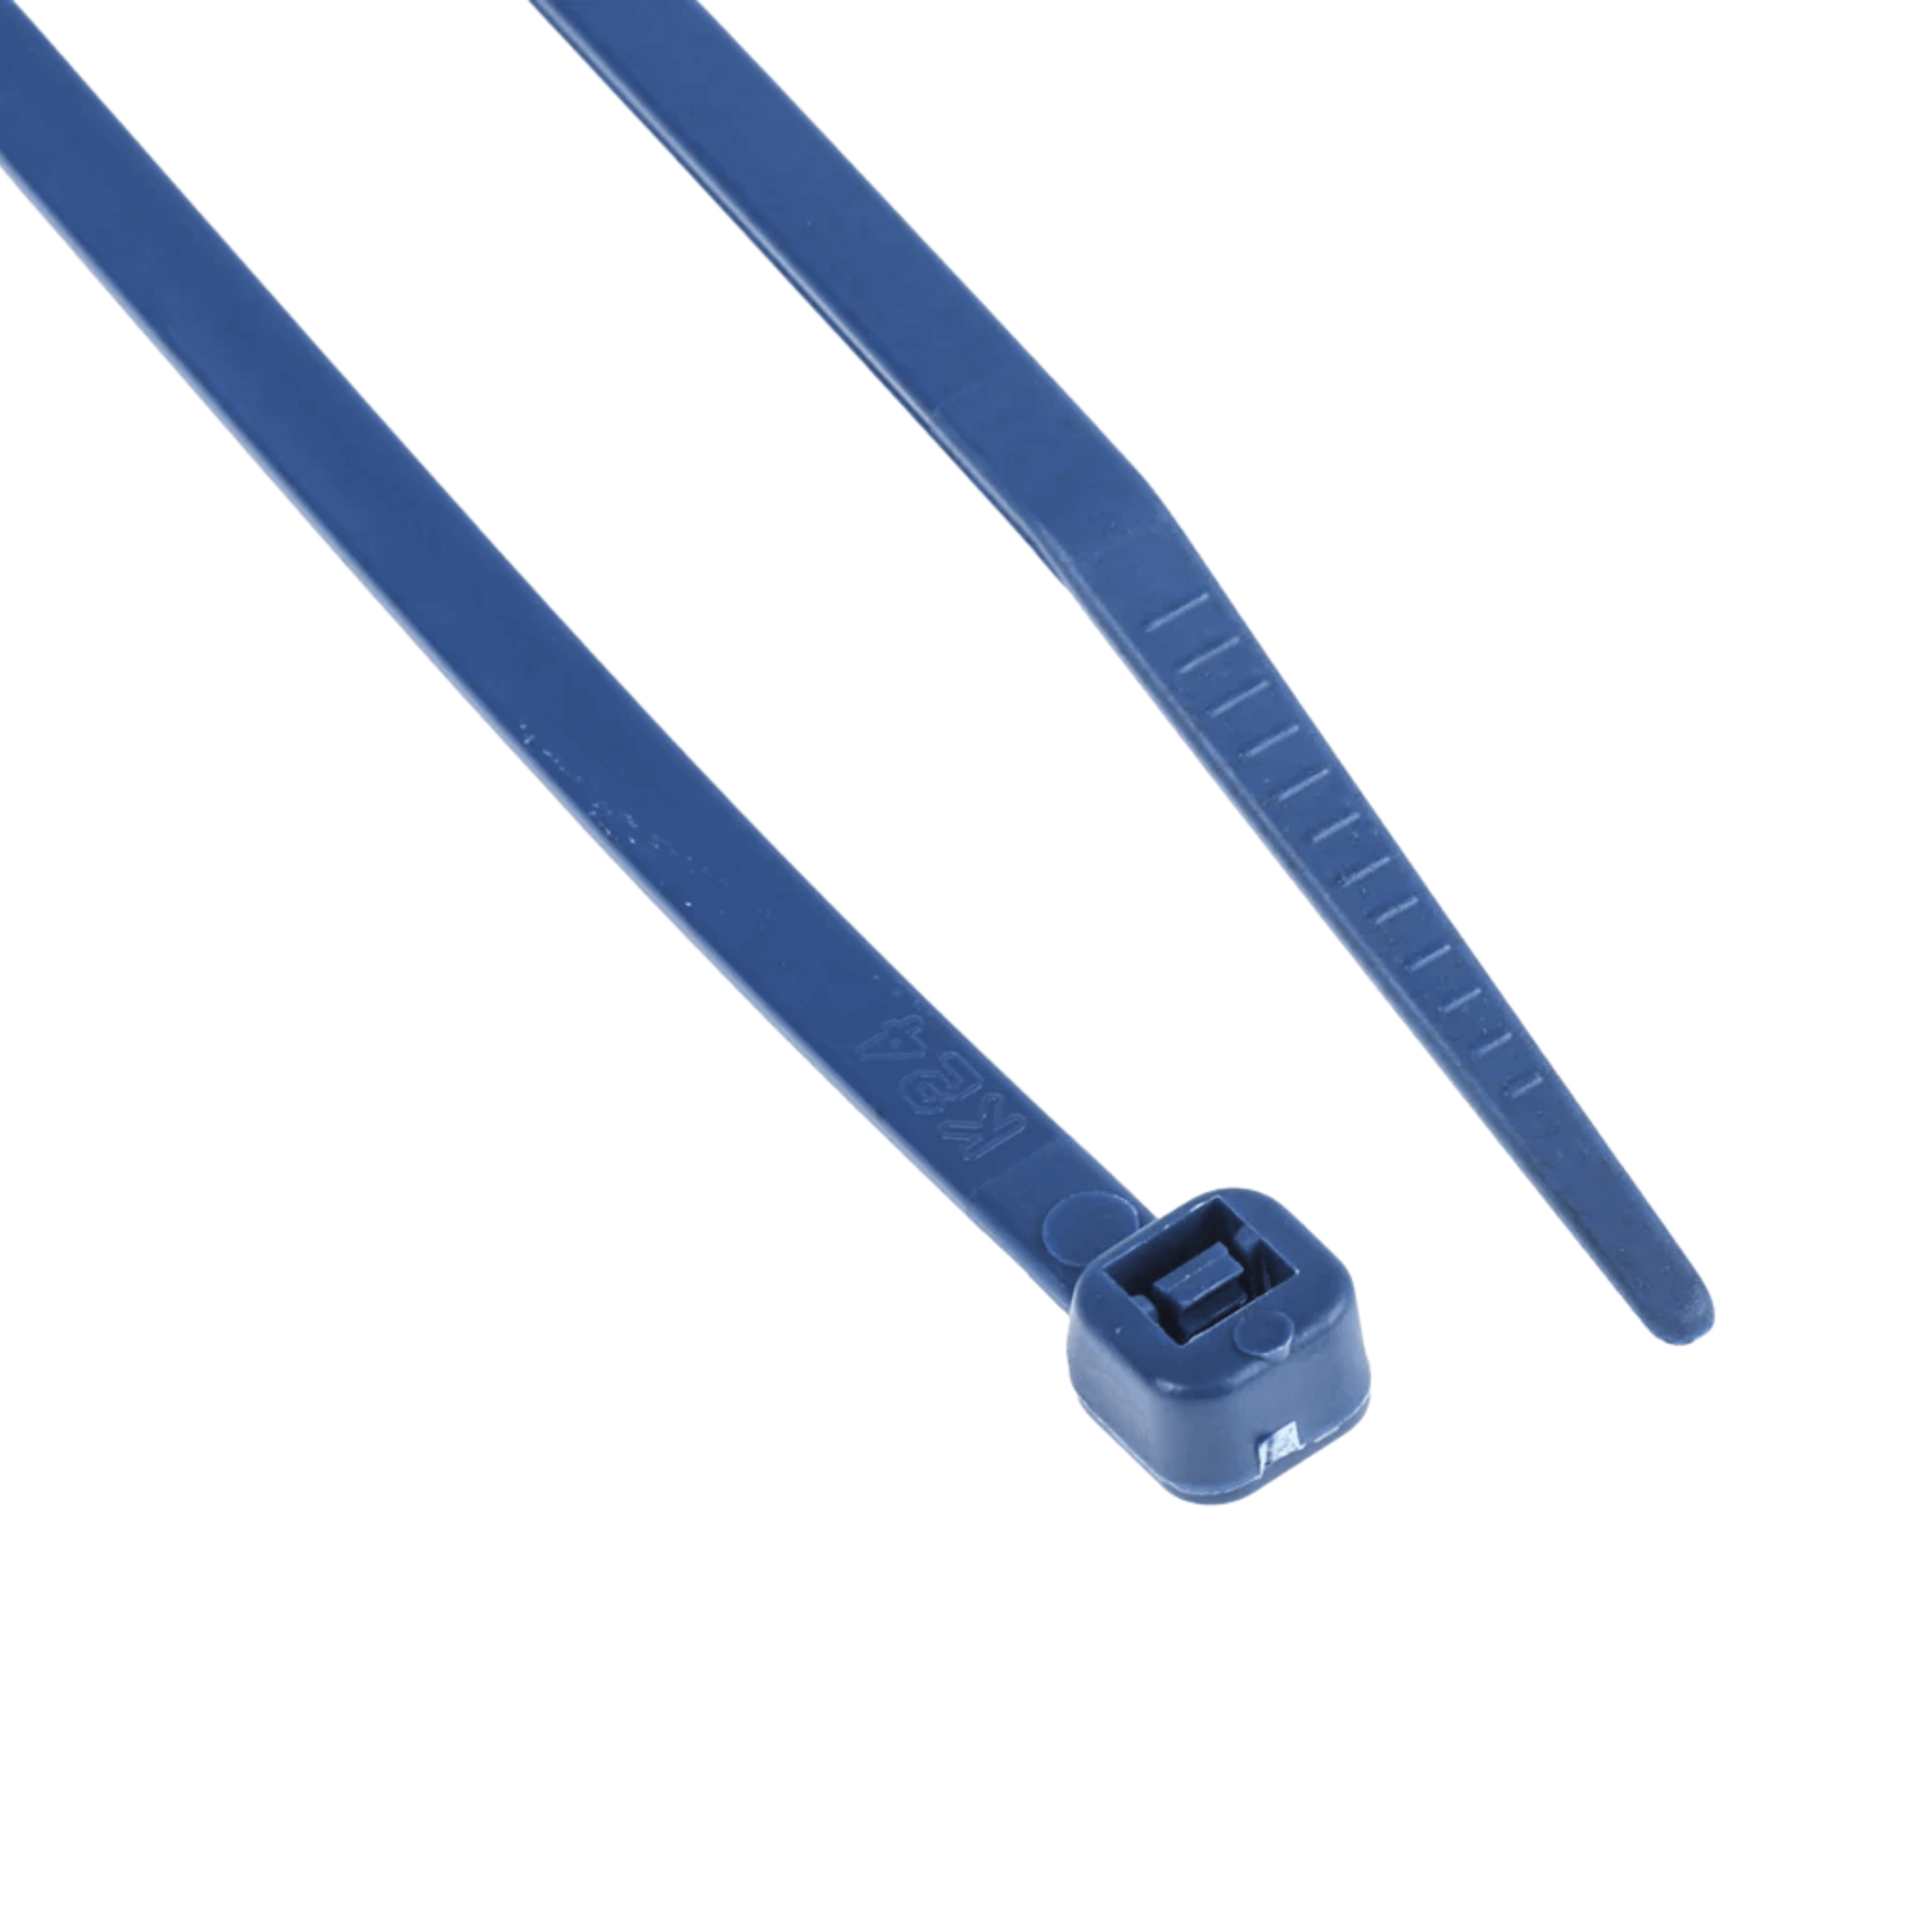 Plastic Ties - Blue, 100 Pack, 3.6 mm